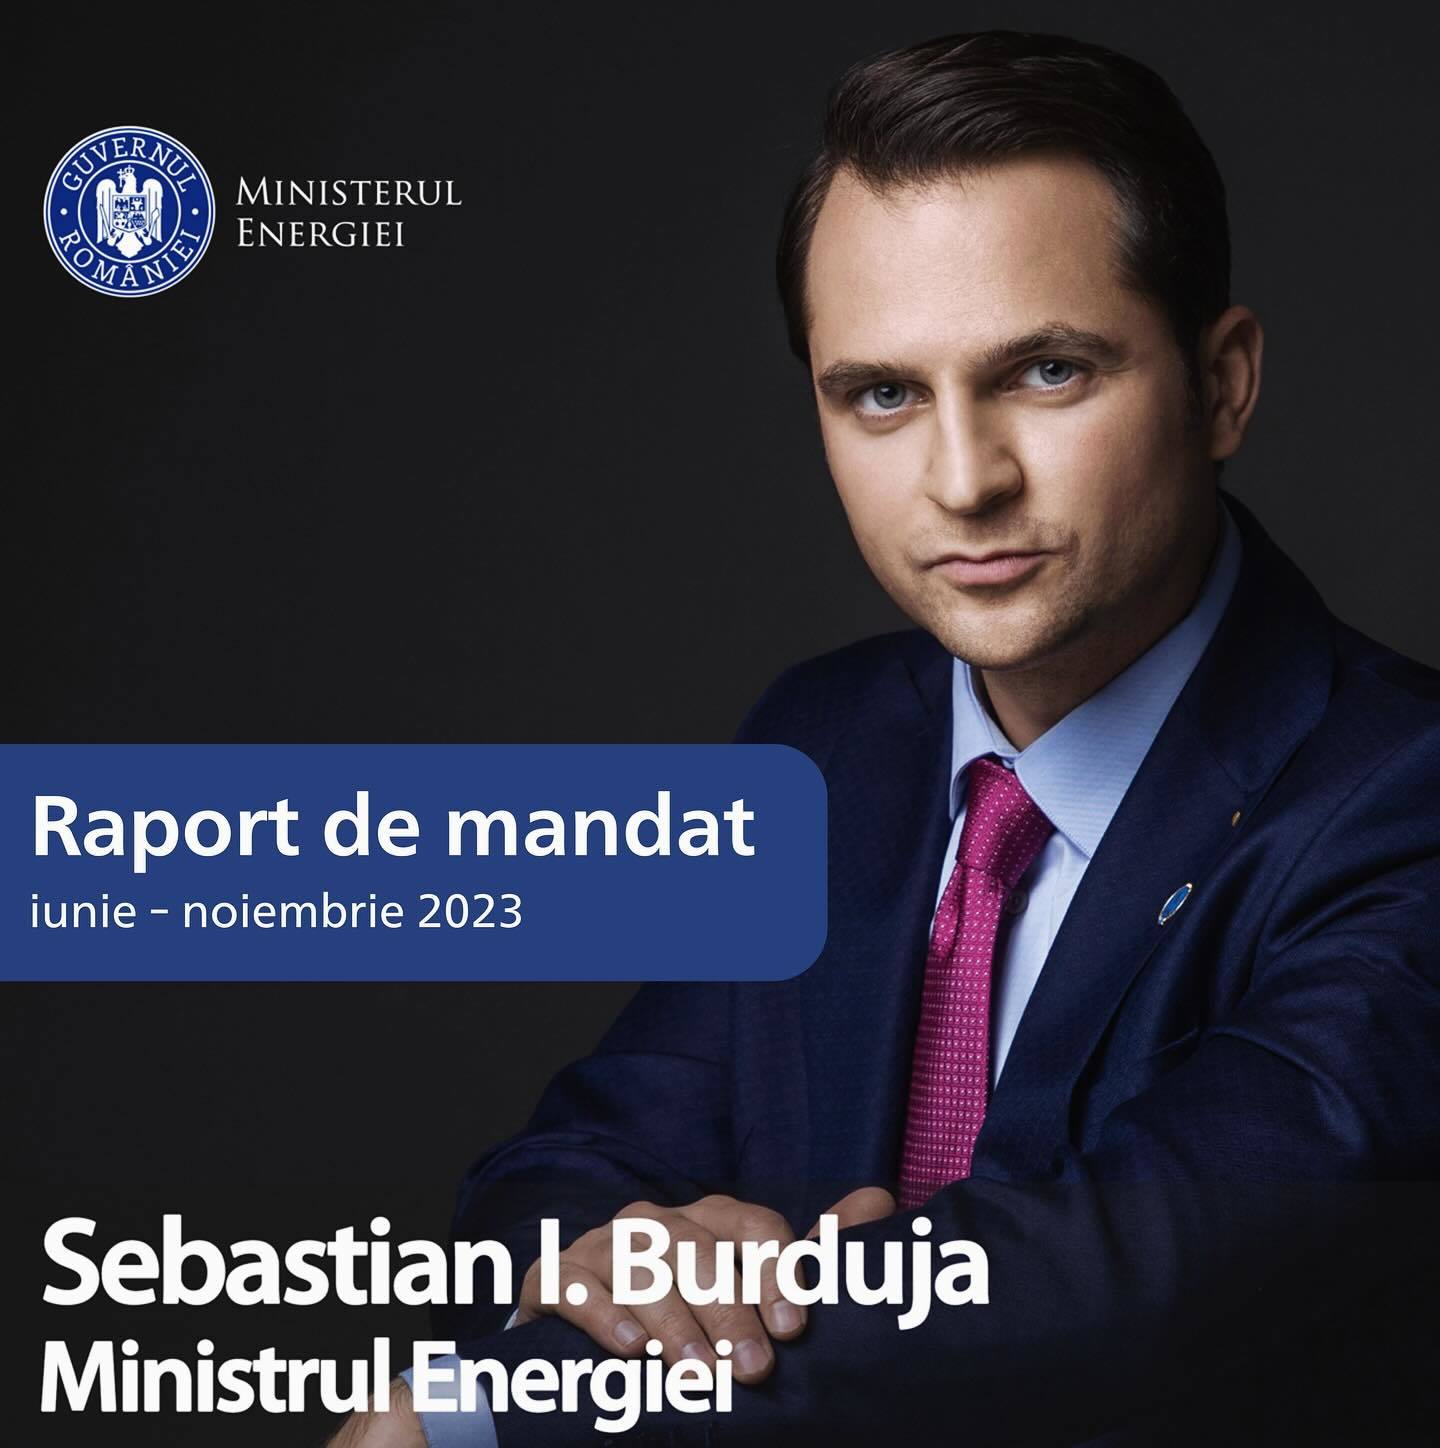 Ministrul Energiei îşi prezintă raportul de mandat pentru perioada iunie-noiembrie, menţionând relansarea proiectului Tarniţa-Lăpuşteşti, accelerarea programului civil nuclear românesc şi listarea Hidroelectrica – DOCUMENT